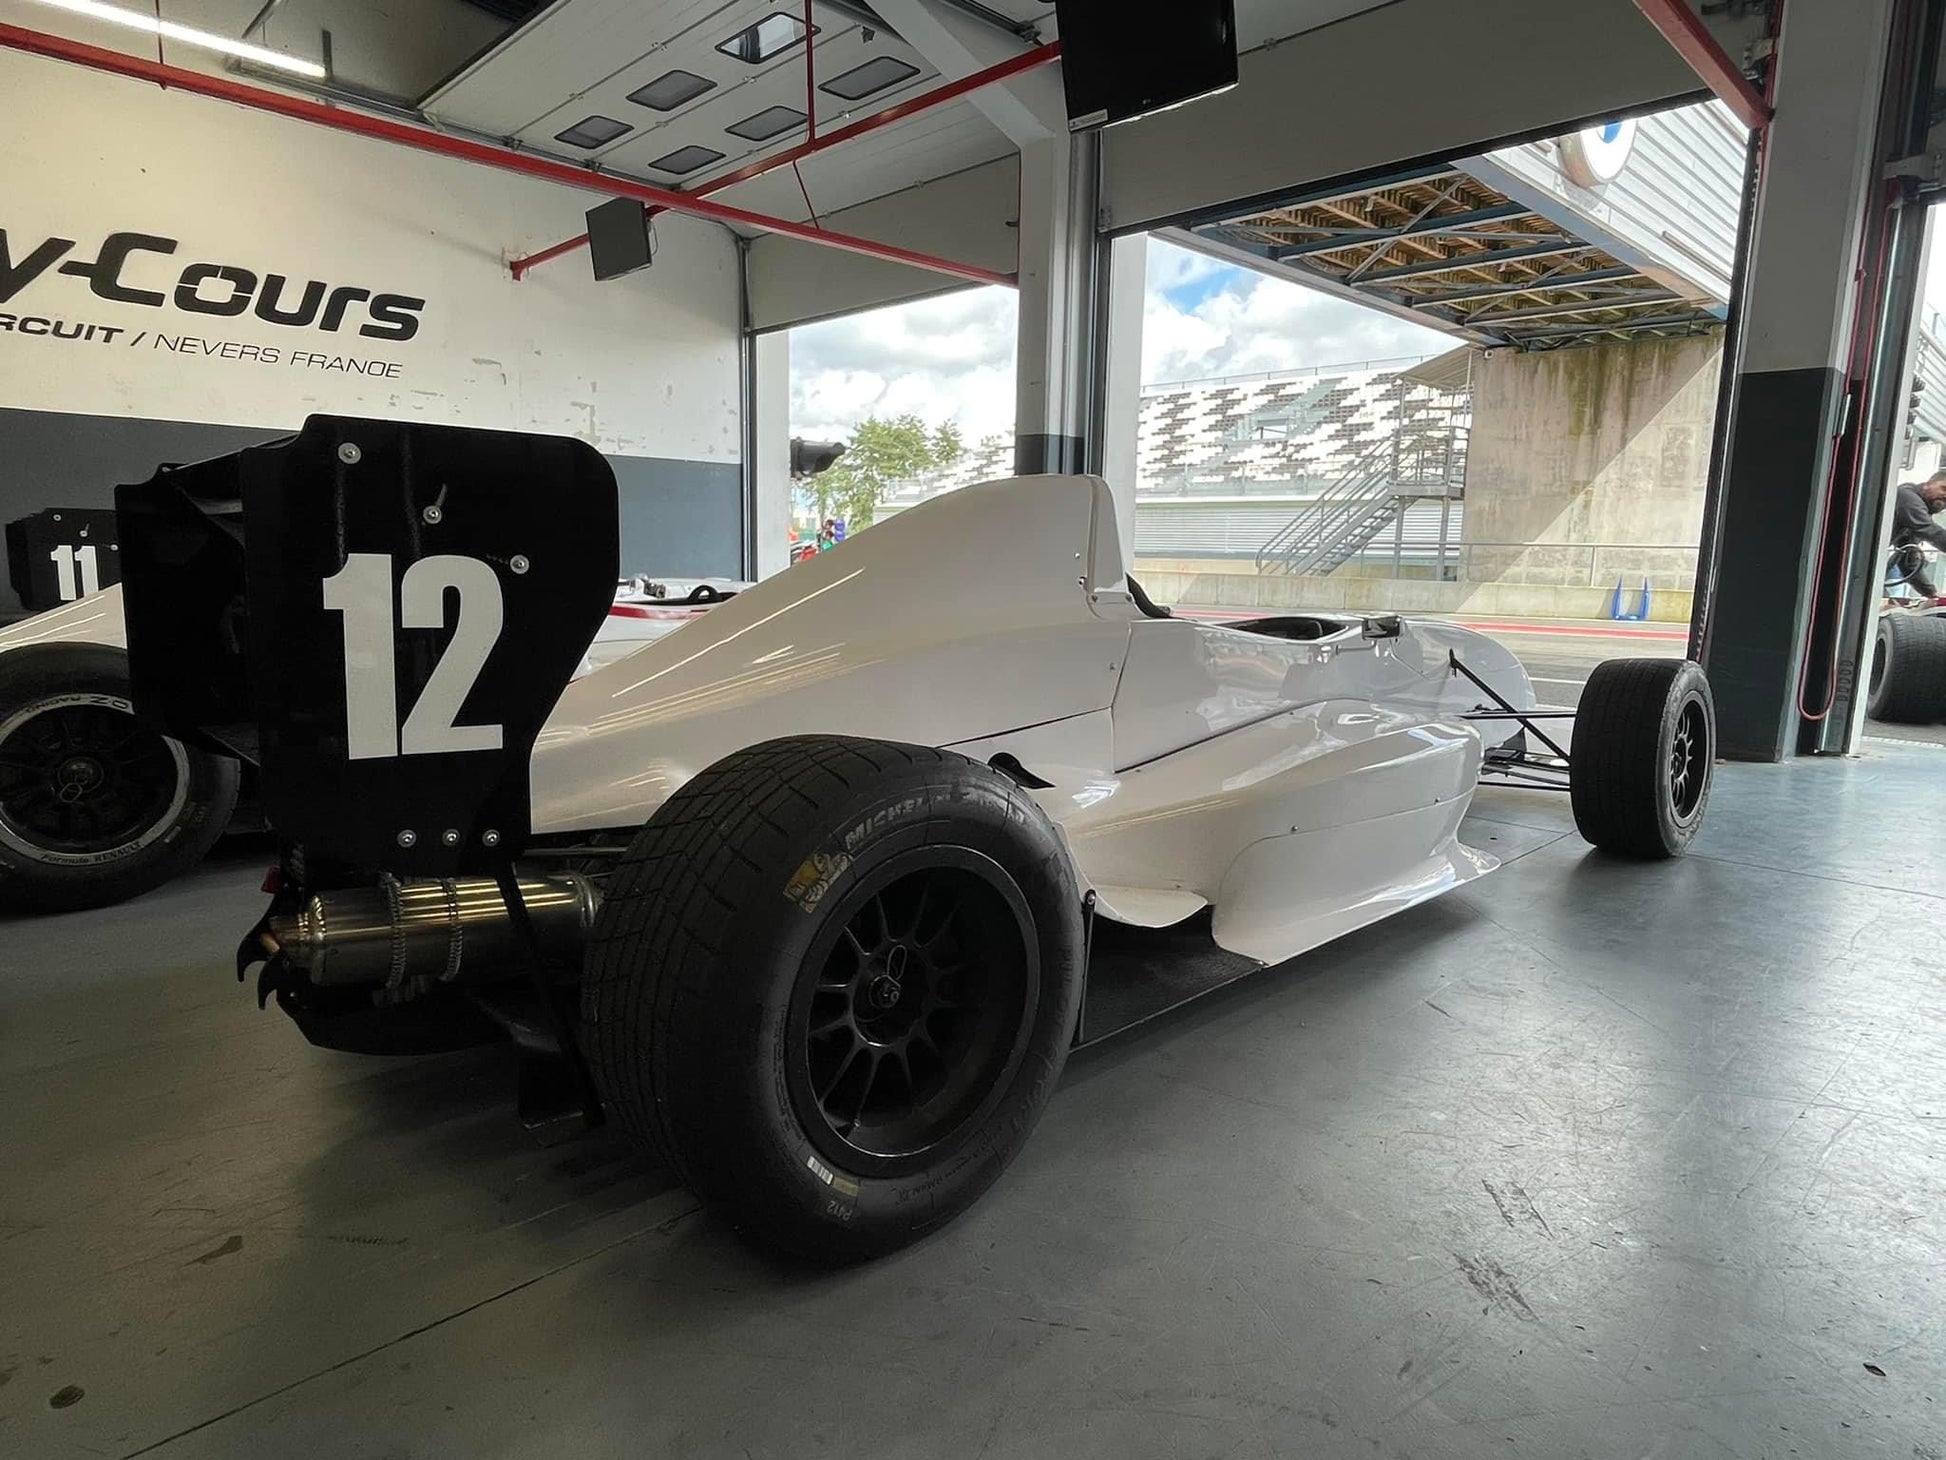 Pilotez une Formule Renault sur un circuit de Formule 1 lors d'un stage de pilotage avec Mercury Silver